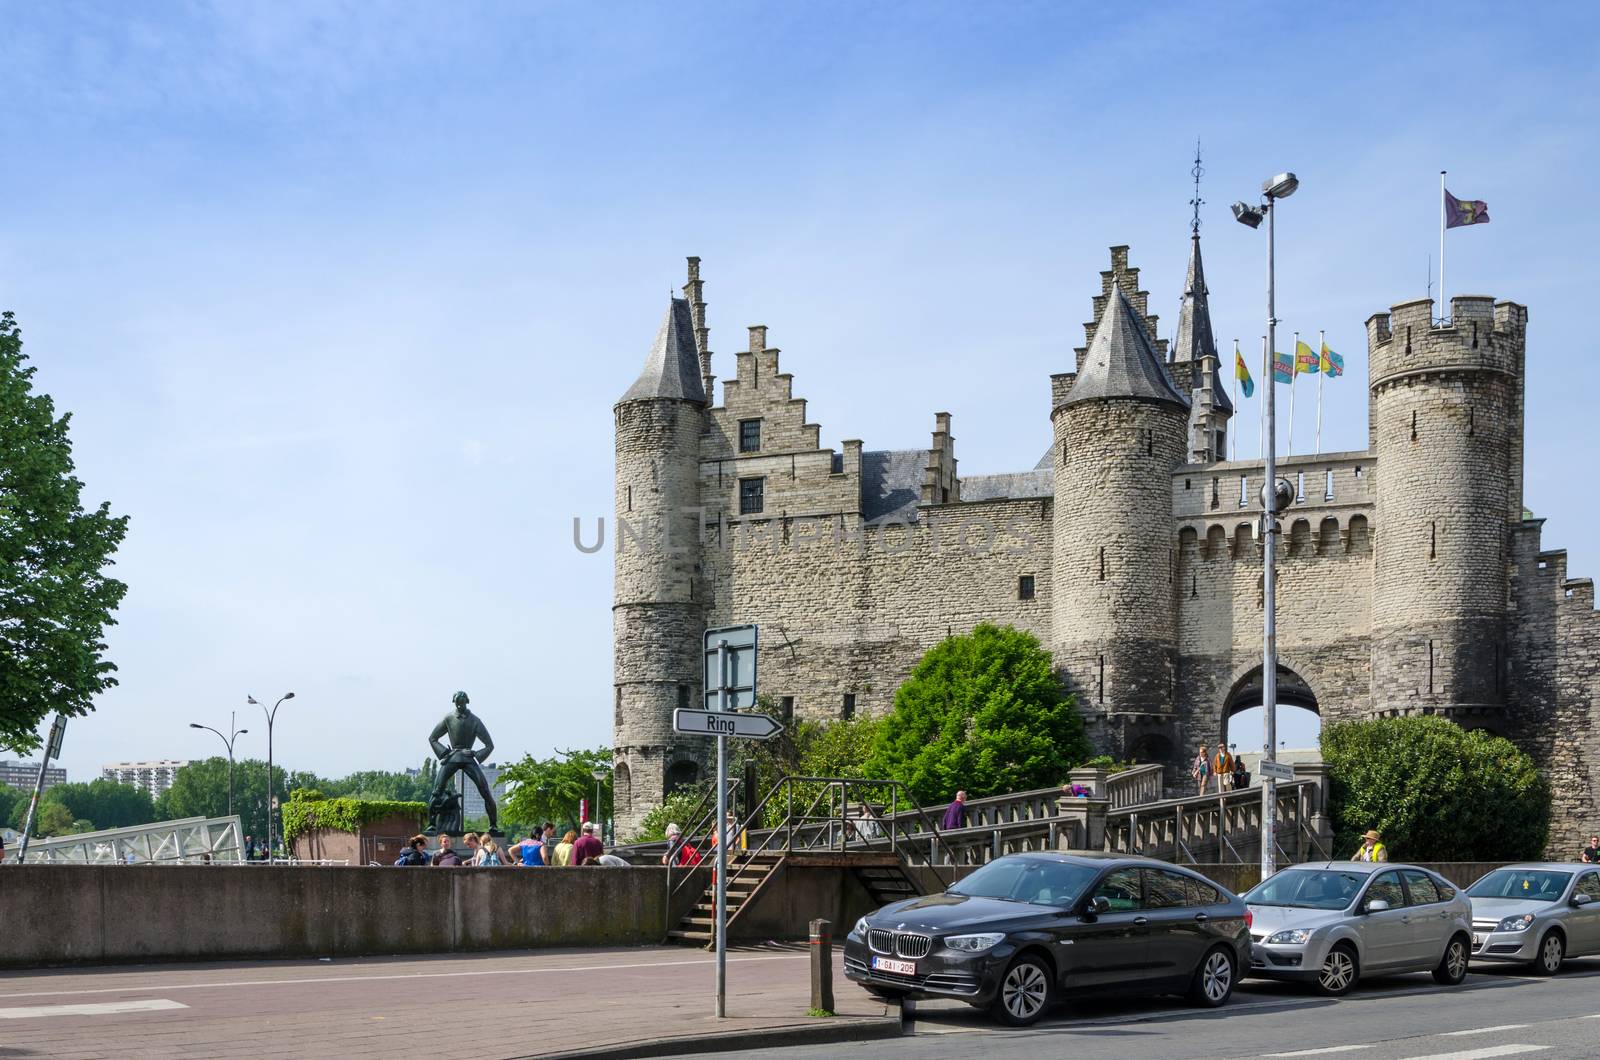 Antwerp, Belgium - May 11, 2015: People visit Steen Castle (Het steen) in Antwerp by siraanamwong